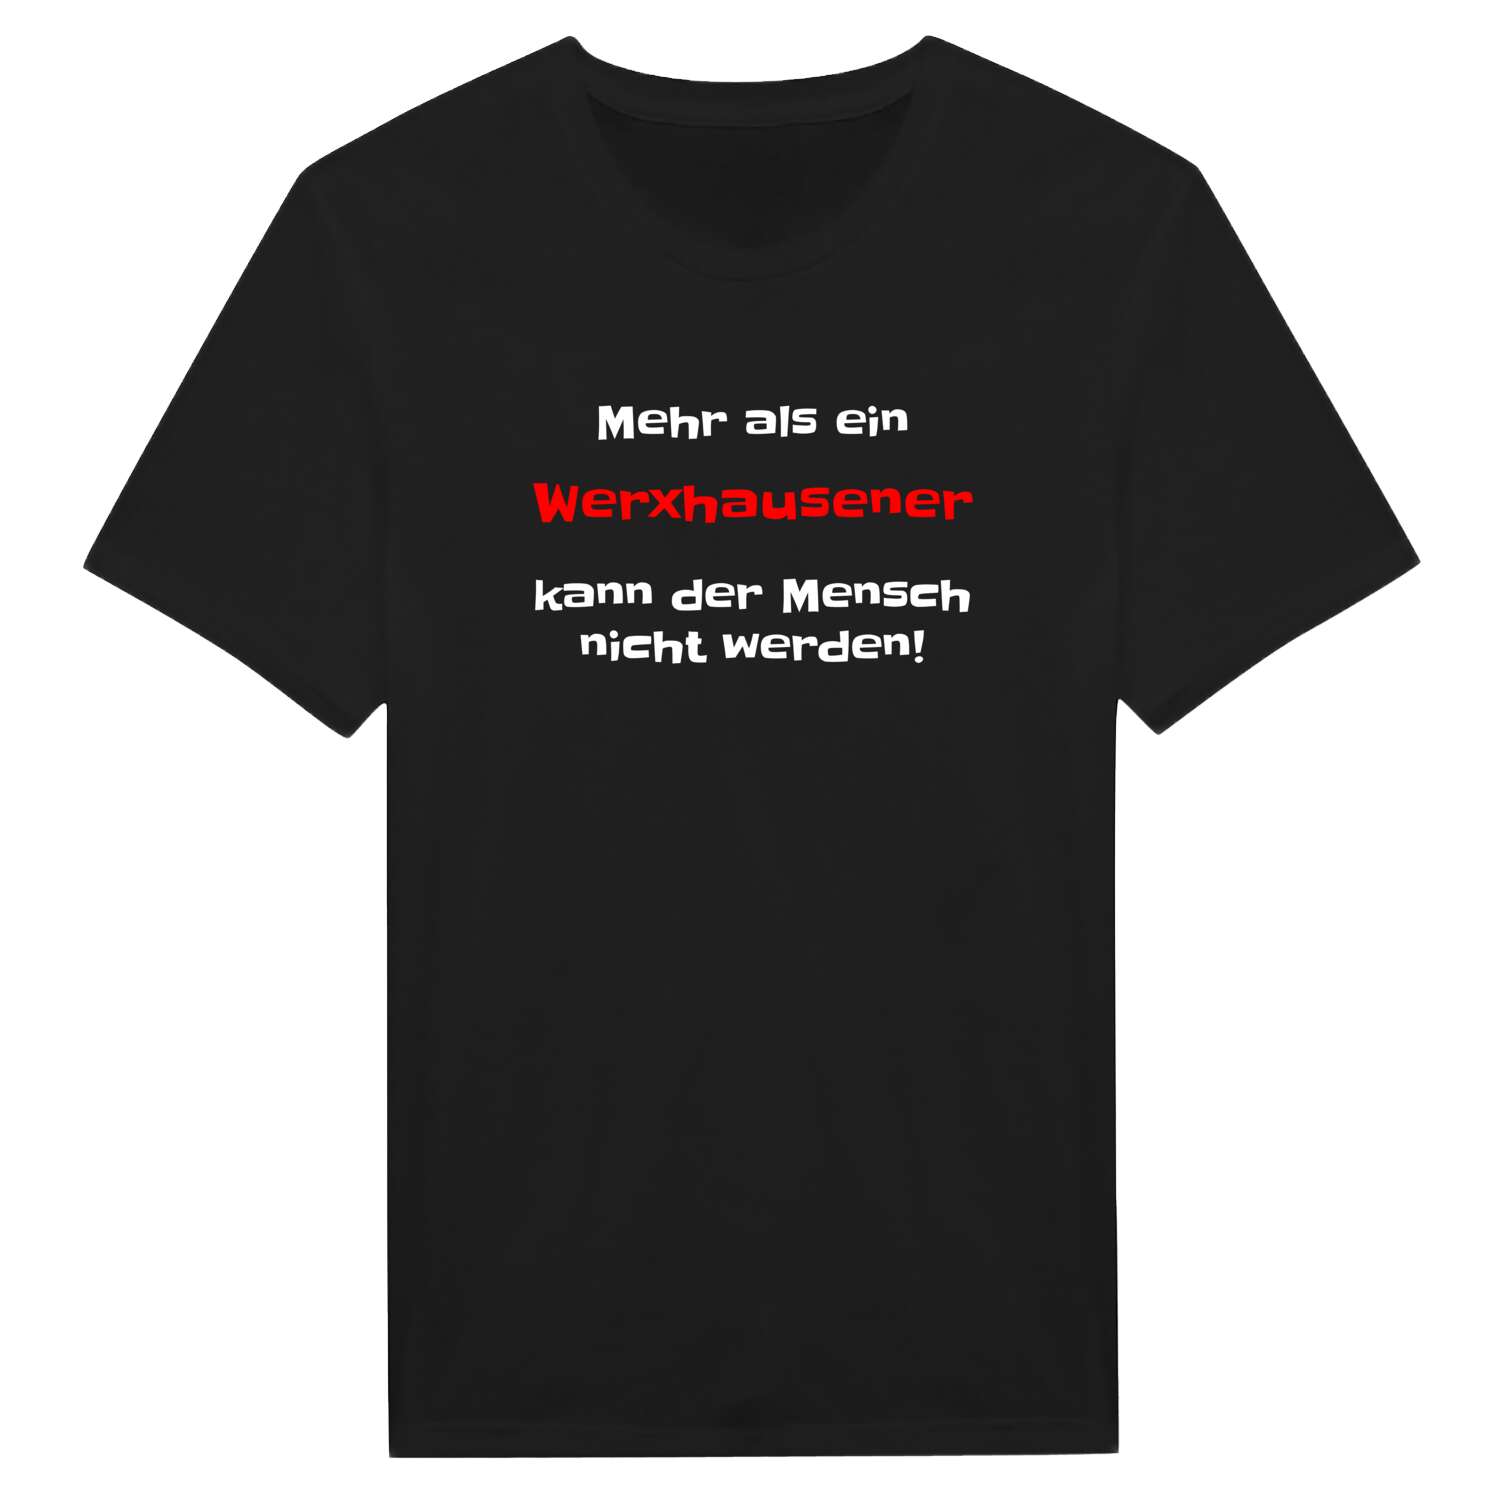 Werxhausen T-Shirt »Mehr als ein«